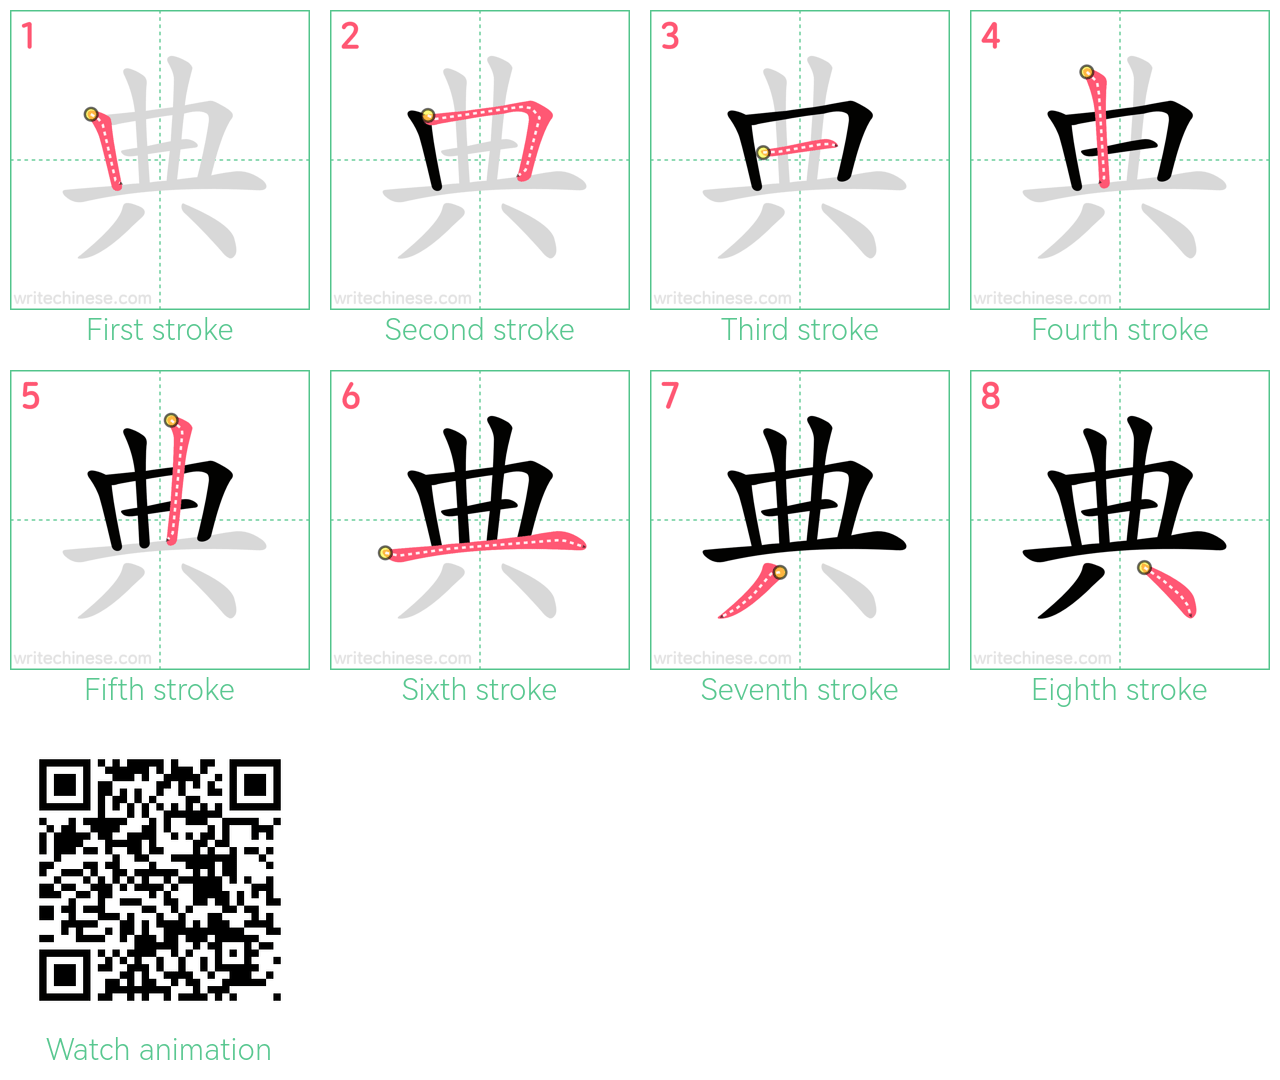 典 step-by-step stroke order diagrams